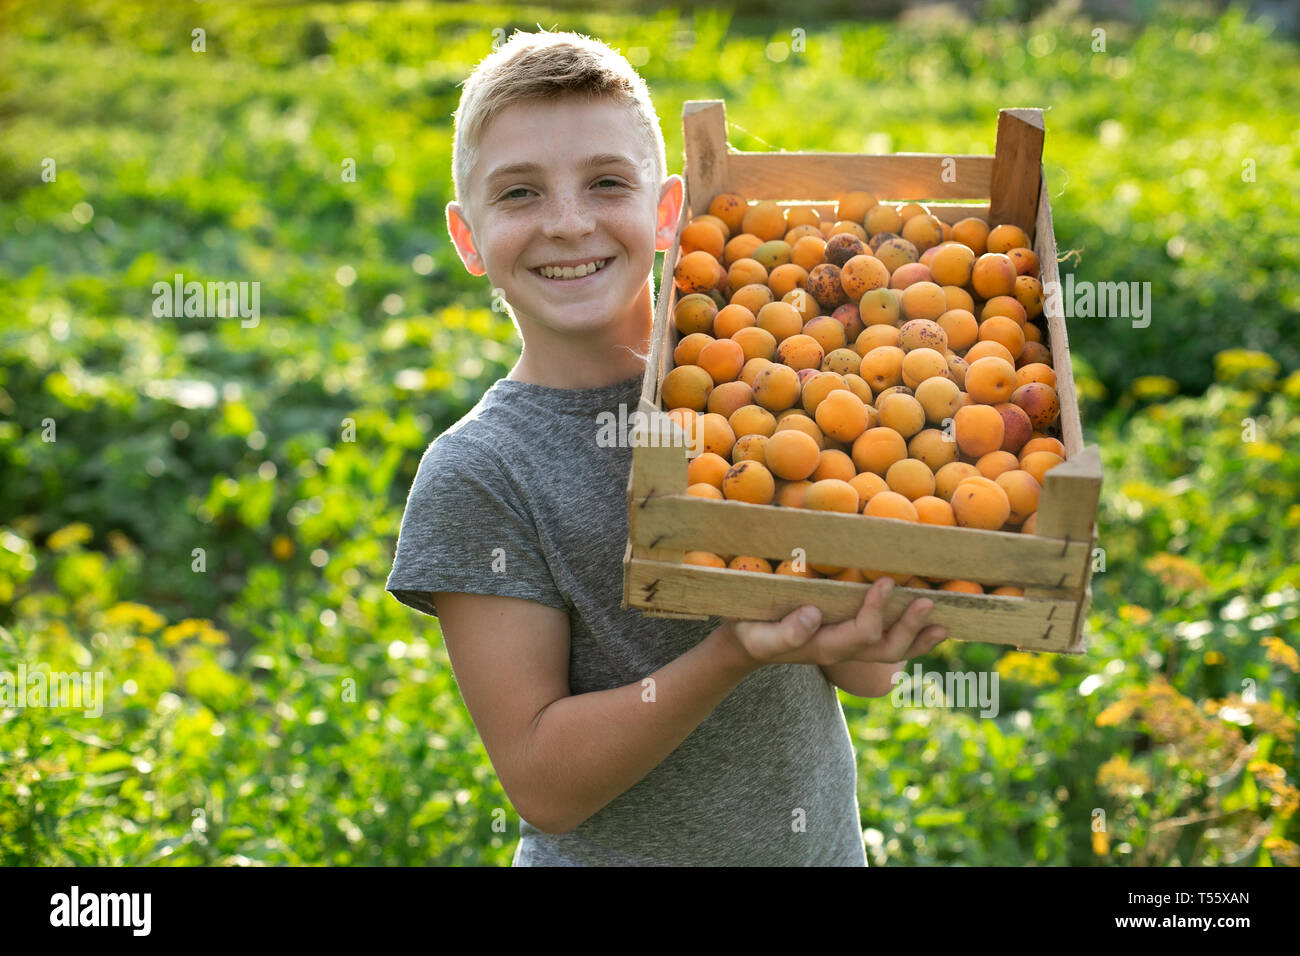 Smiling boy holding caisse d'abricots Banque D'Images